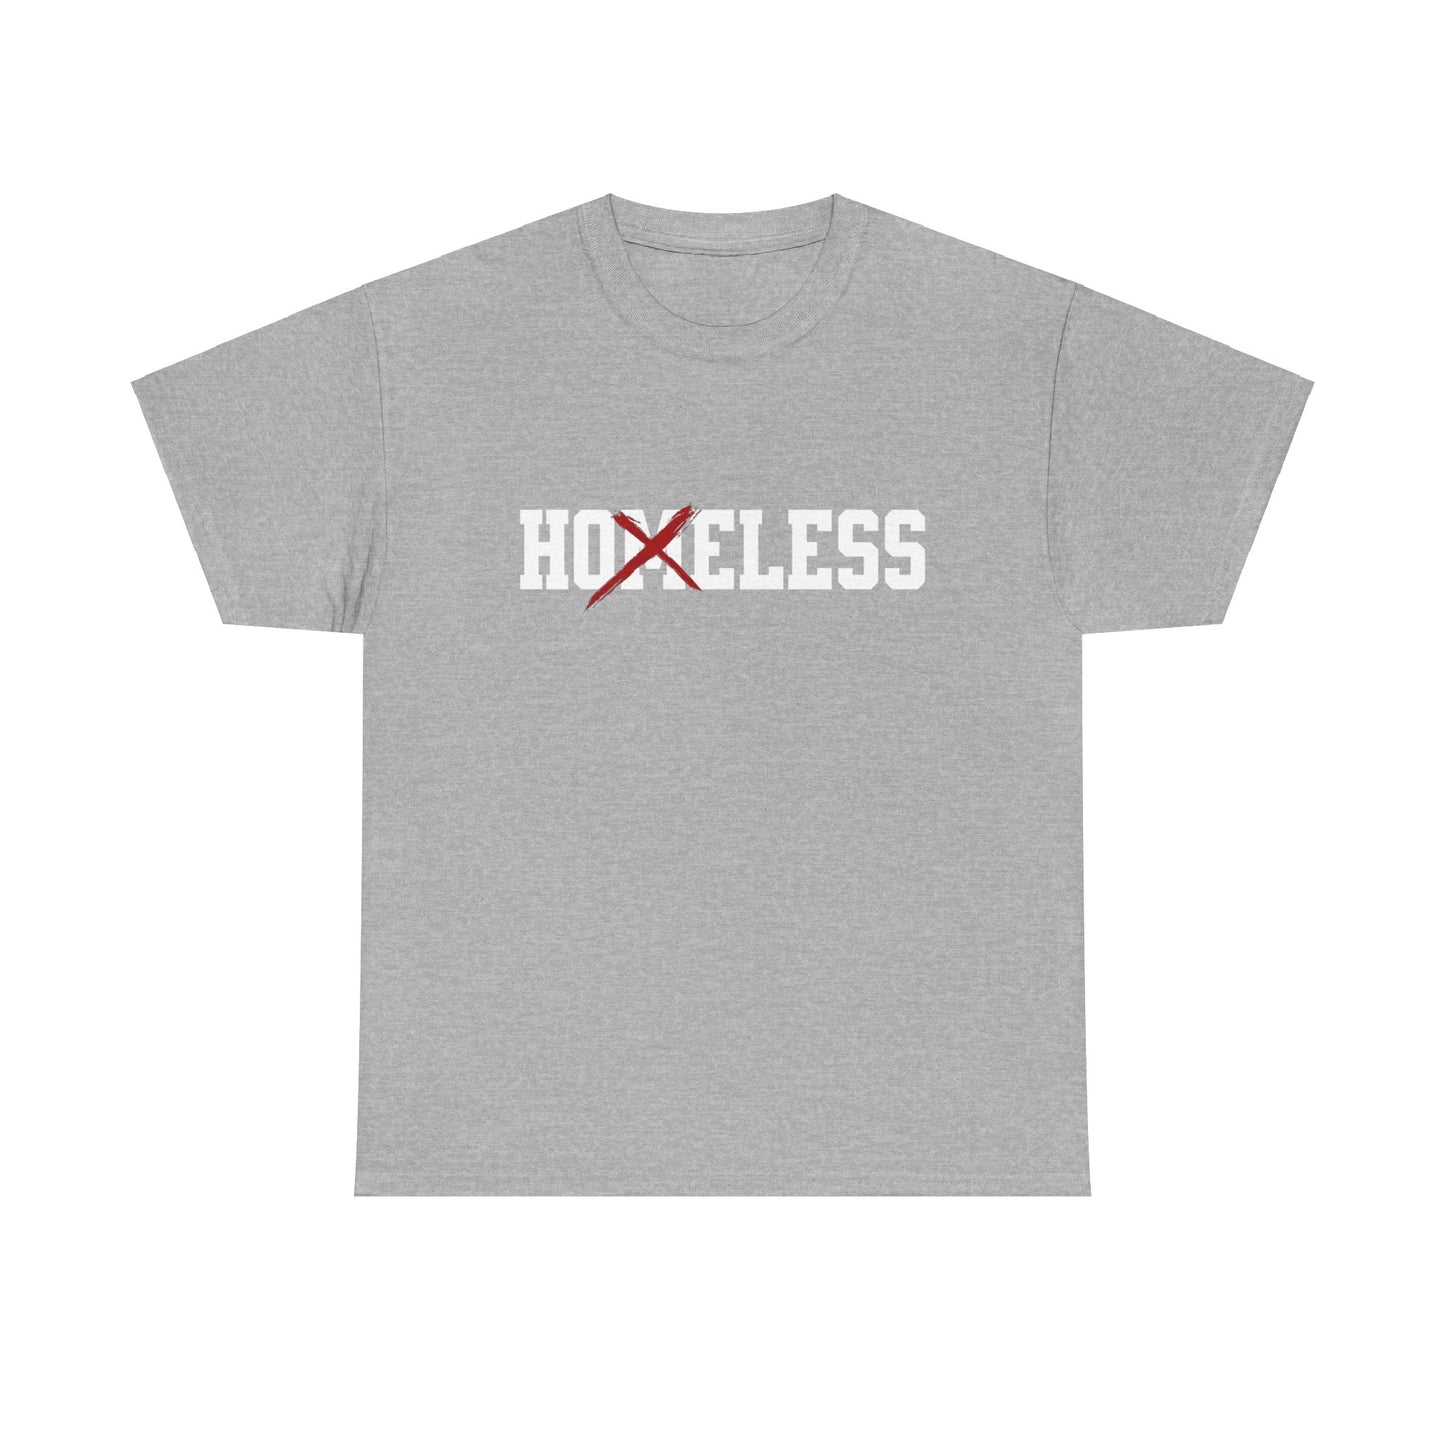 Unisex Shirt in grau mit dem Spruch Homeless drauf. Das M ist durchgestrichen; also steht auf dem Shirt Hoeless.